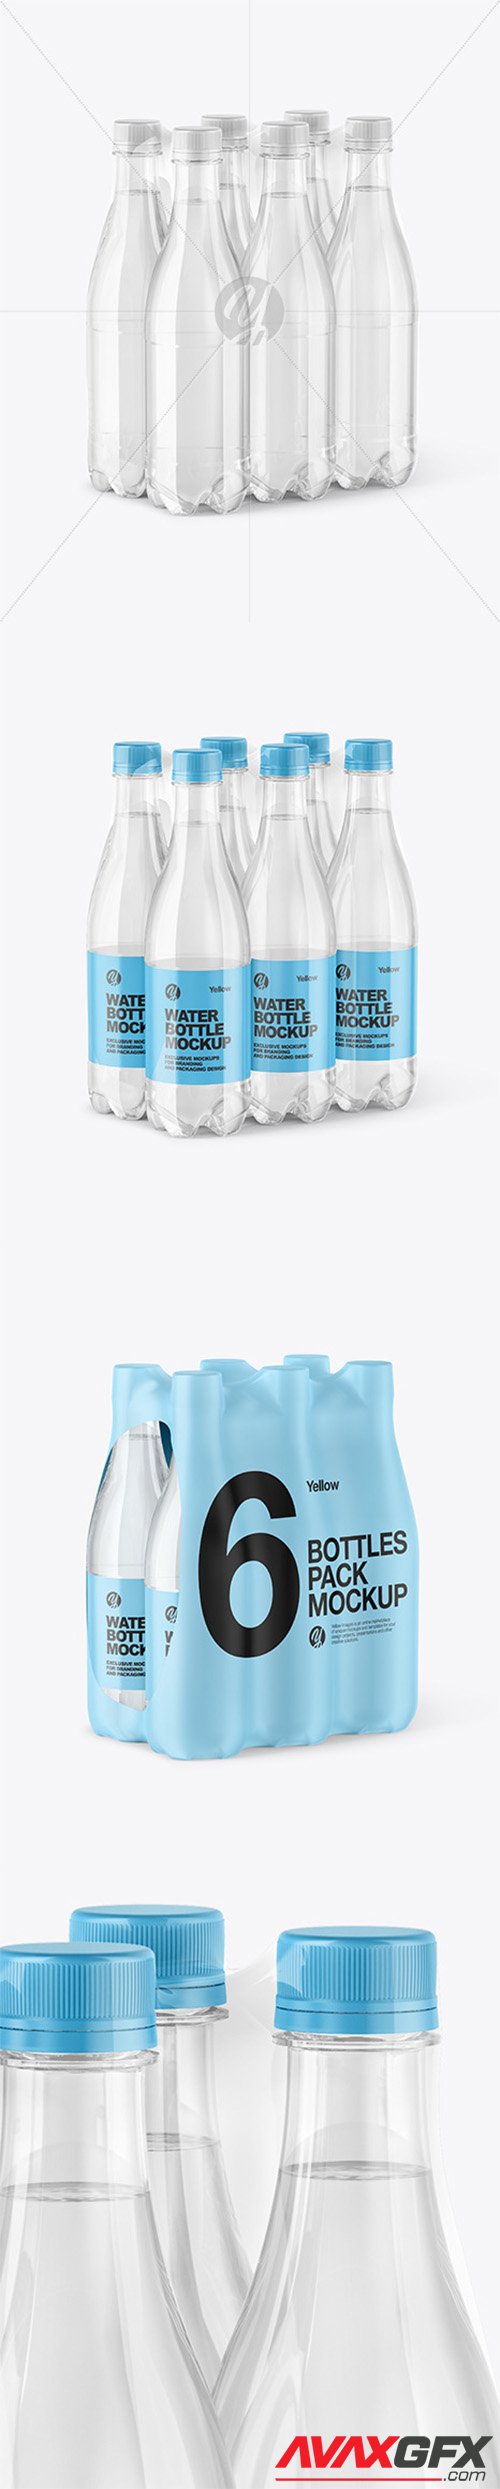 Shrink Pack with 6 Plastic Bottles Mockup 56017